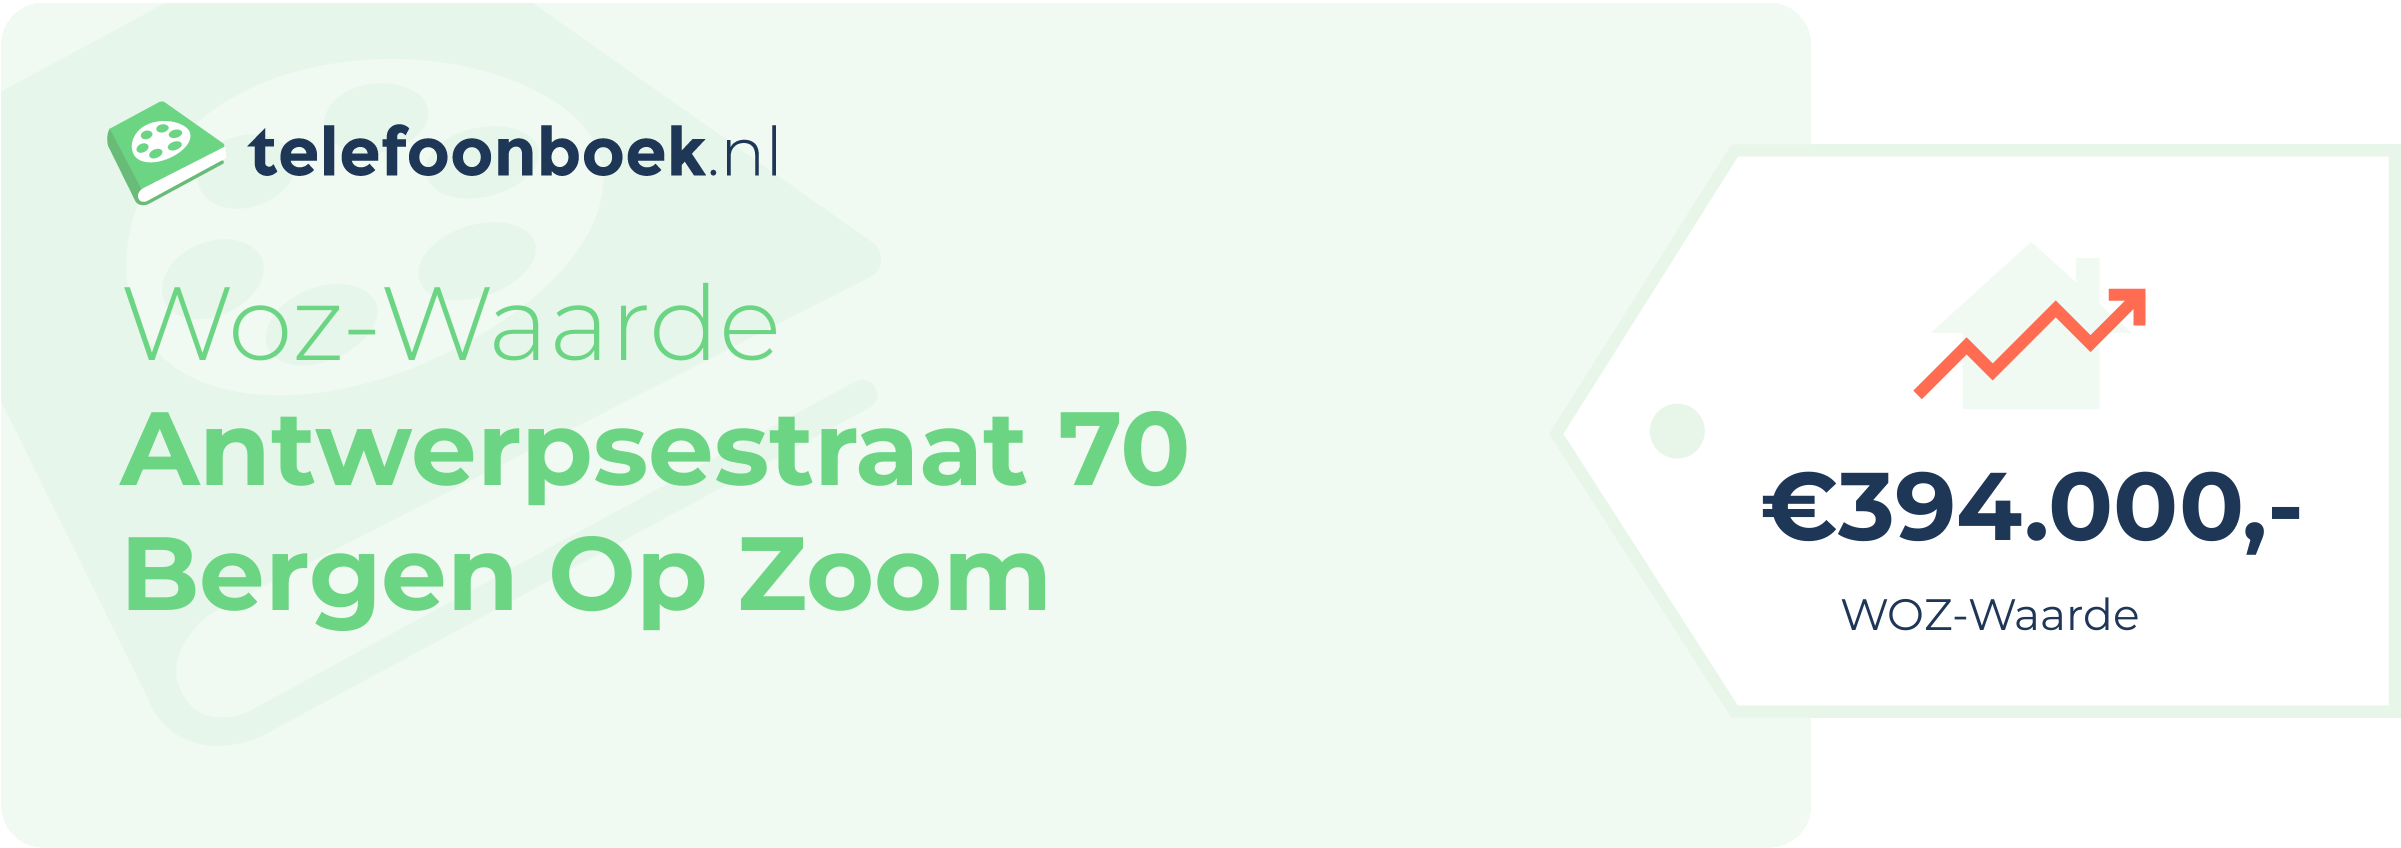 WOZ-waarde Antwerpsestraat 70 Bergen Op Zoom